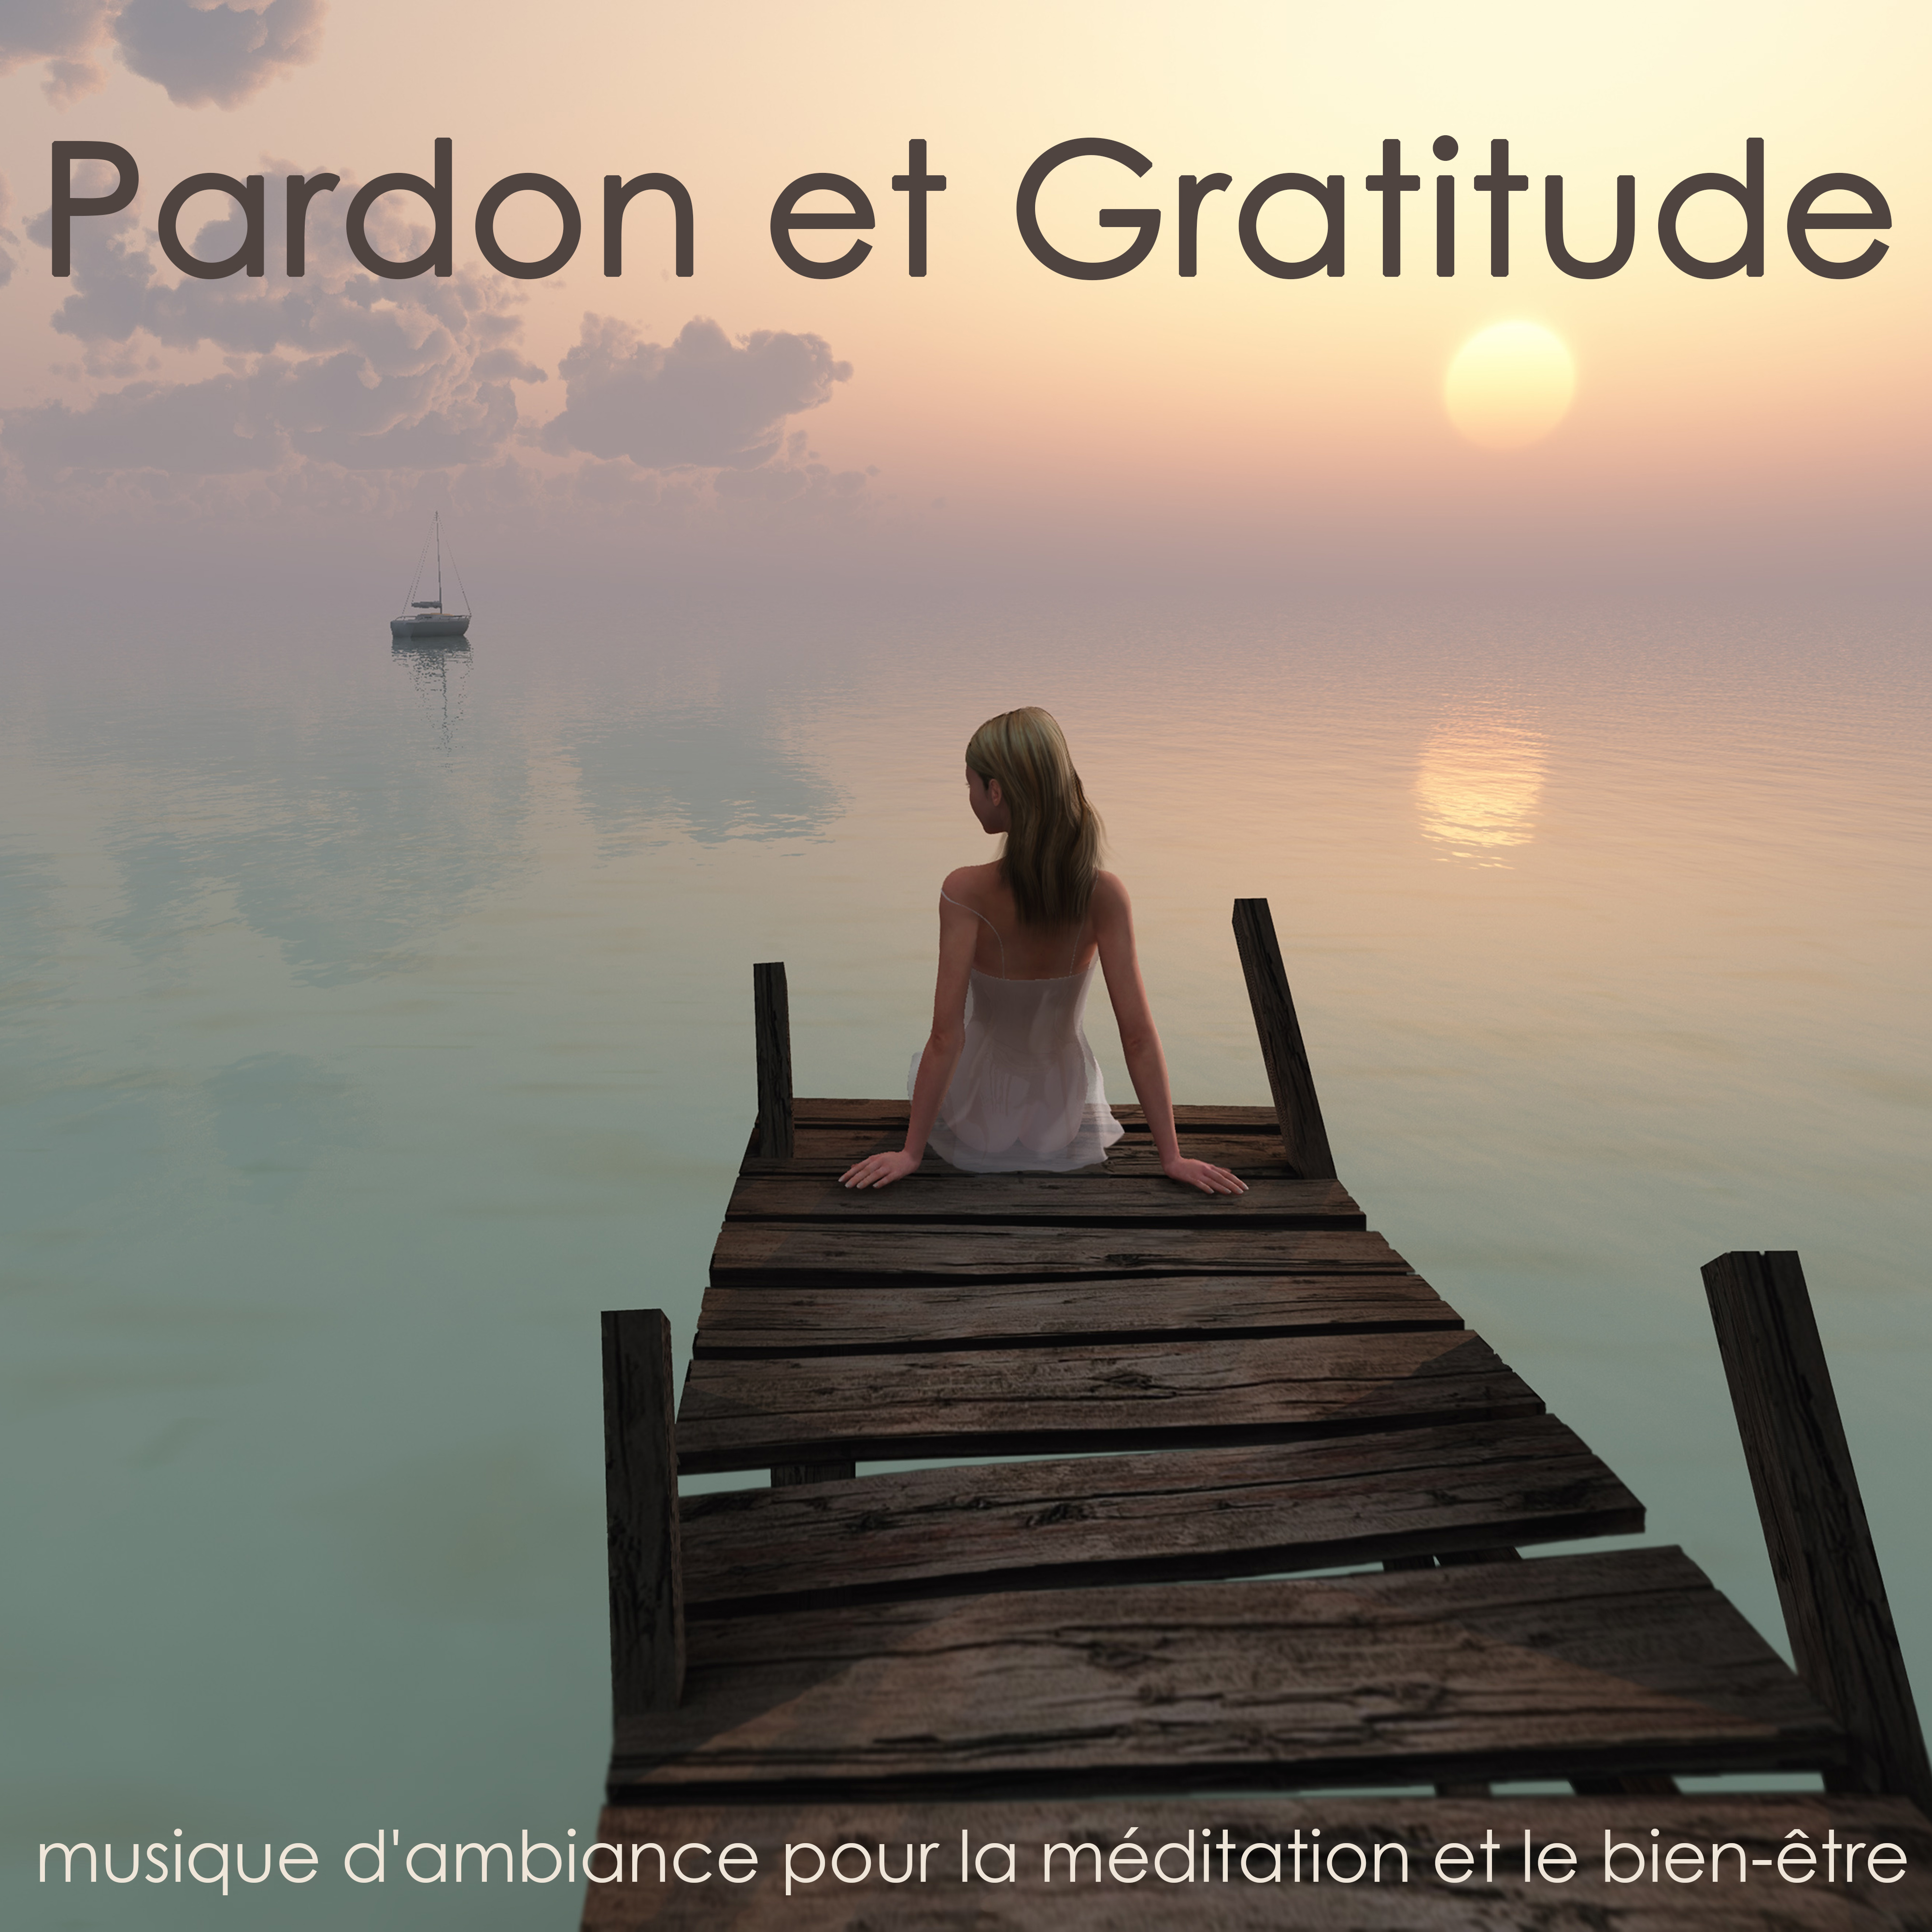 Pardon et Gratitude